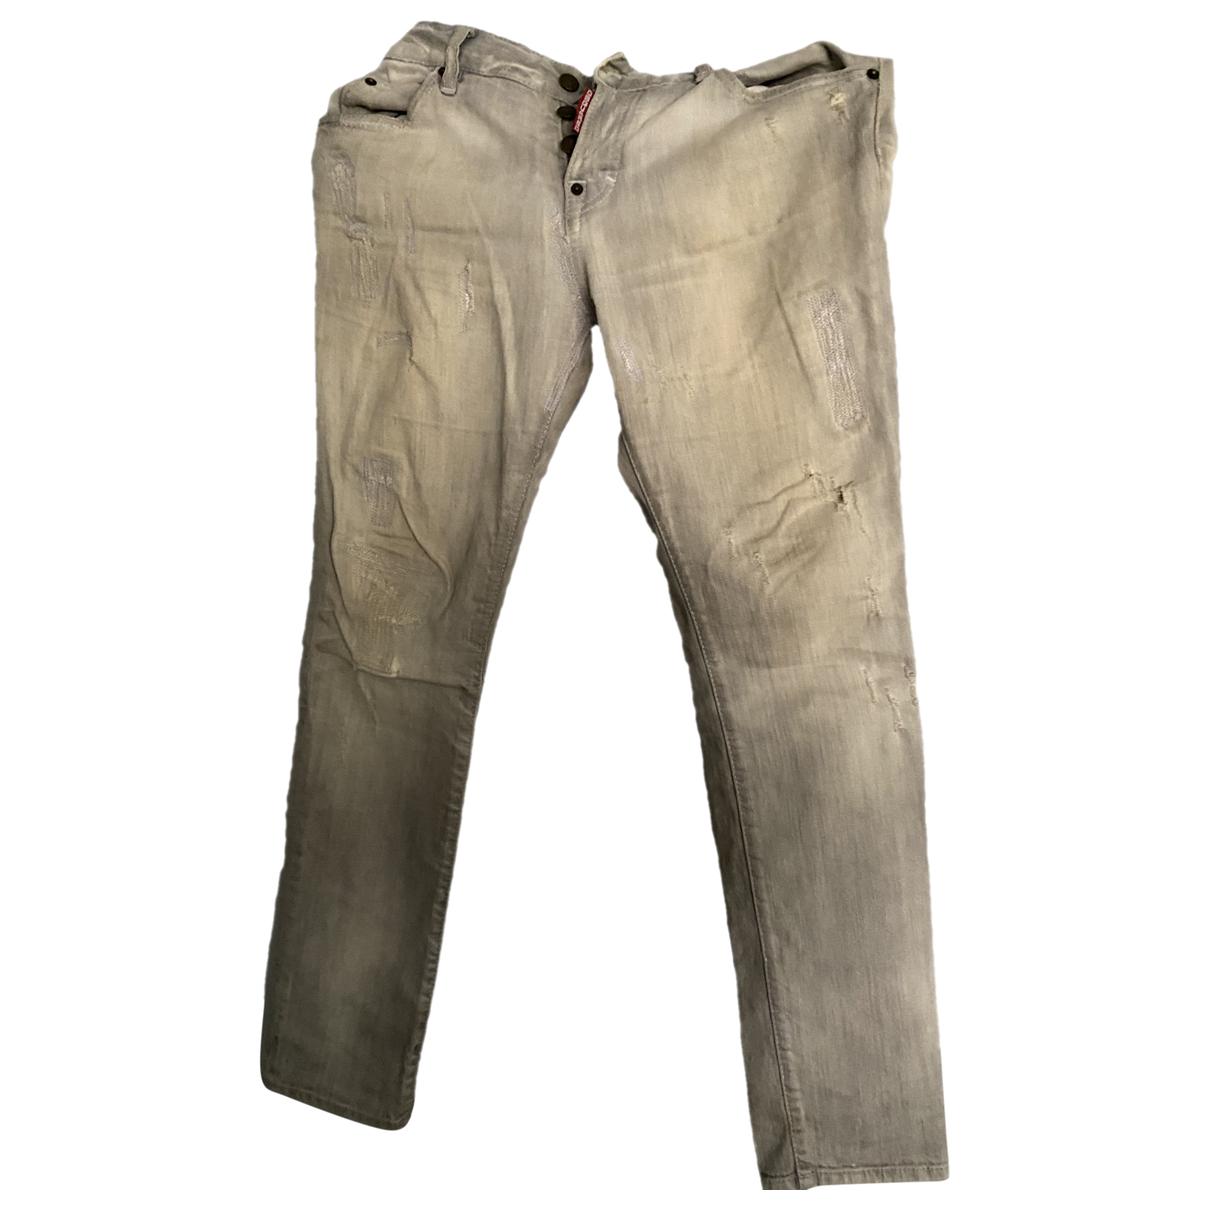 Dsquared2 36376306 US Grey Jeans in 29 - size Slim - Denim jeans